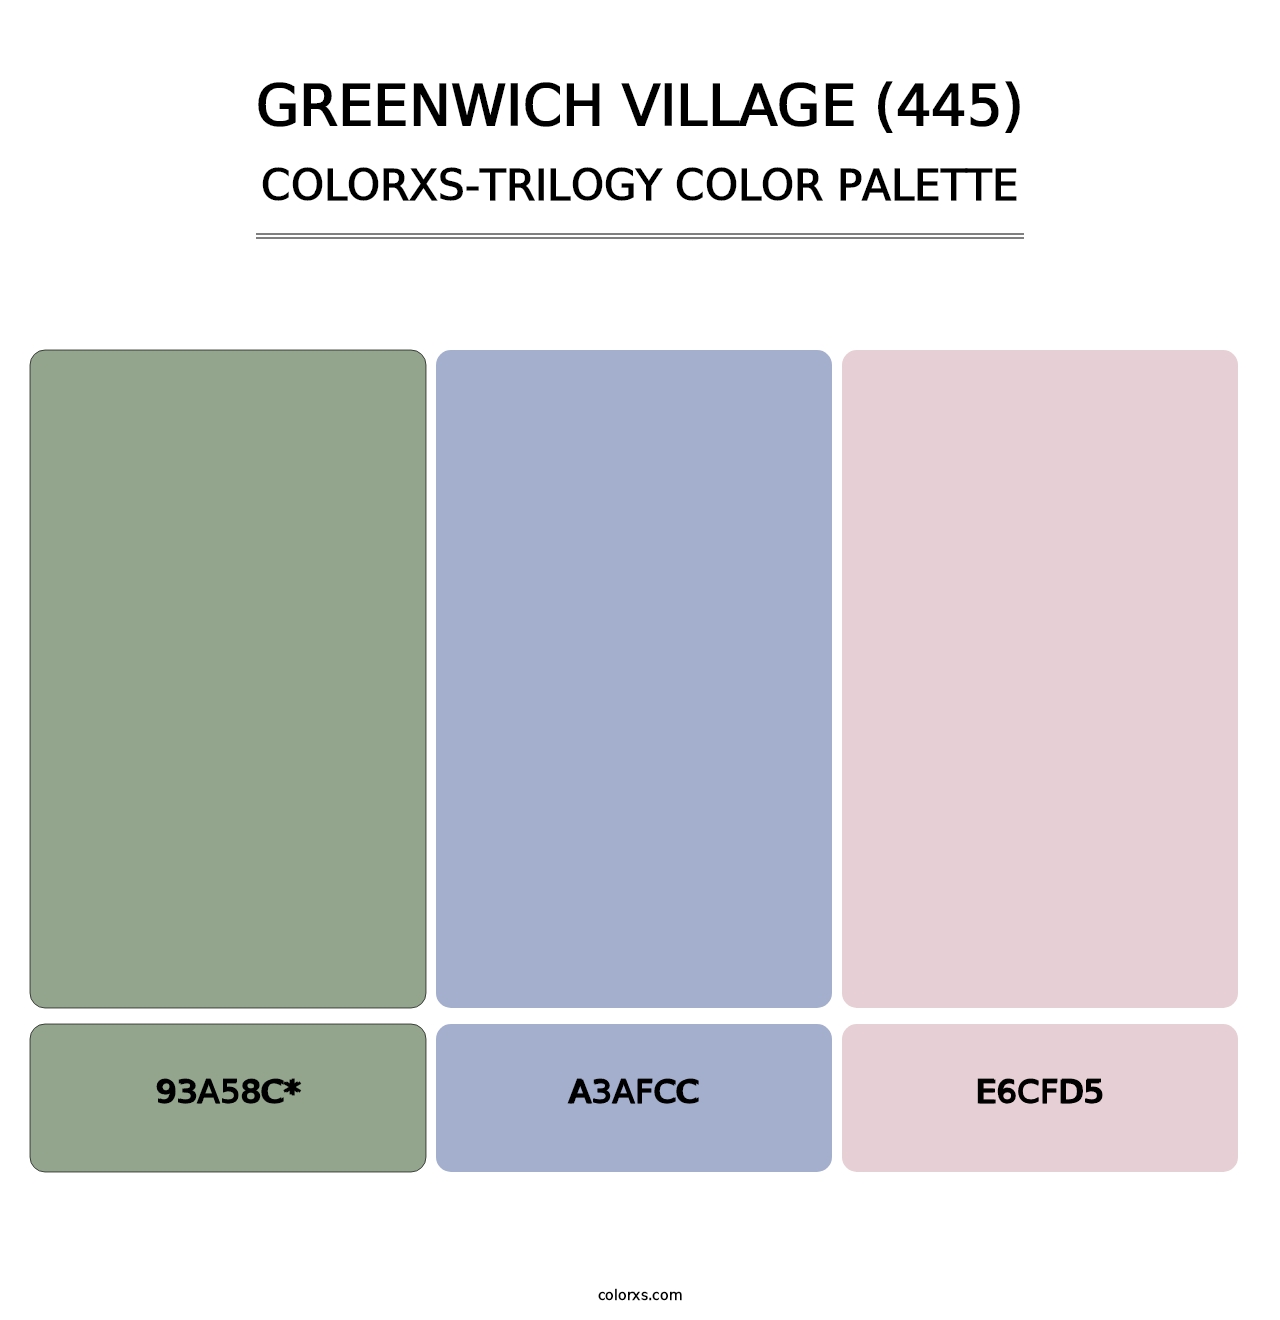 Greenwich Village (445) - Colorxs Trilogy Palette